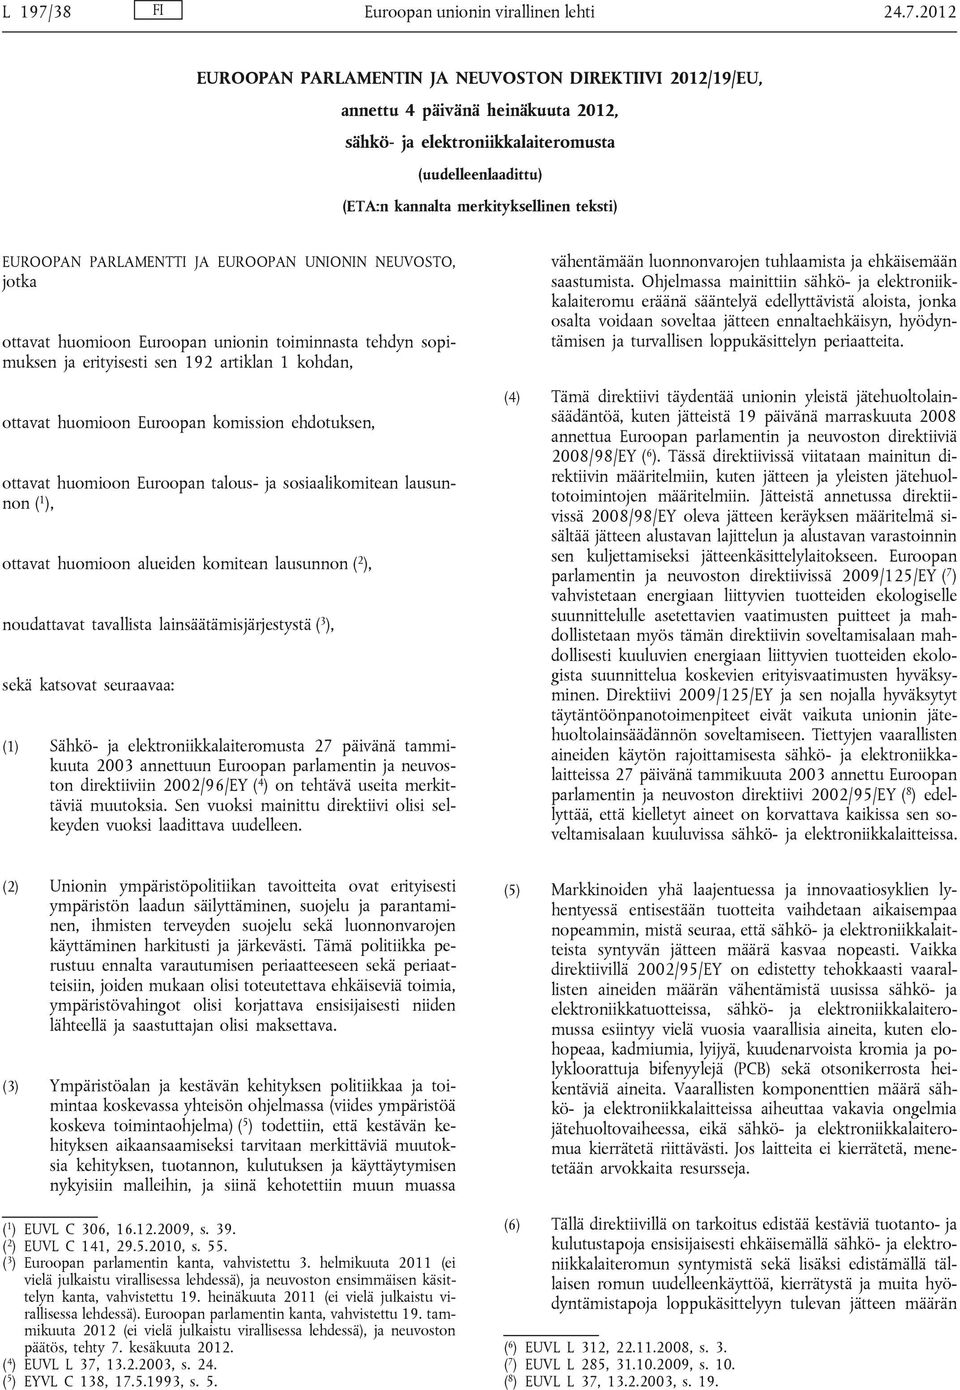 2012 EUROOPAN PARLAMENTIN JA NEUVOSTON DIREKTIIVI 2012/19/EU, annettu 4 päivänä heinäkuuta 2012, sähkö- ja elektroniikkalaiteromusta (uudelleenlaadittu) (ETA:n kannalta merkityksellinen teksti)